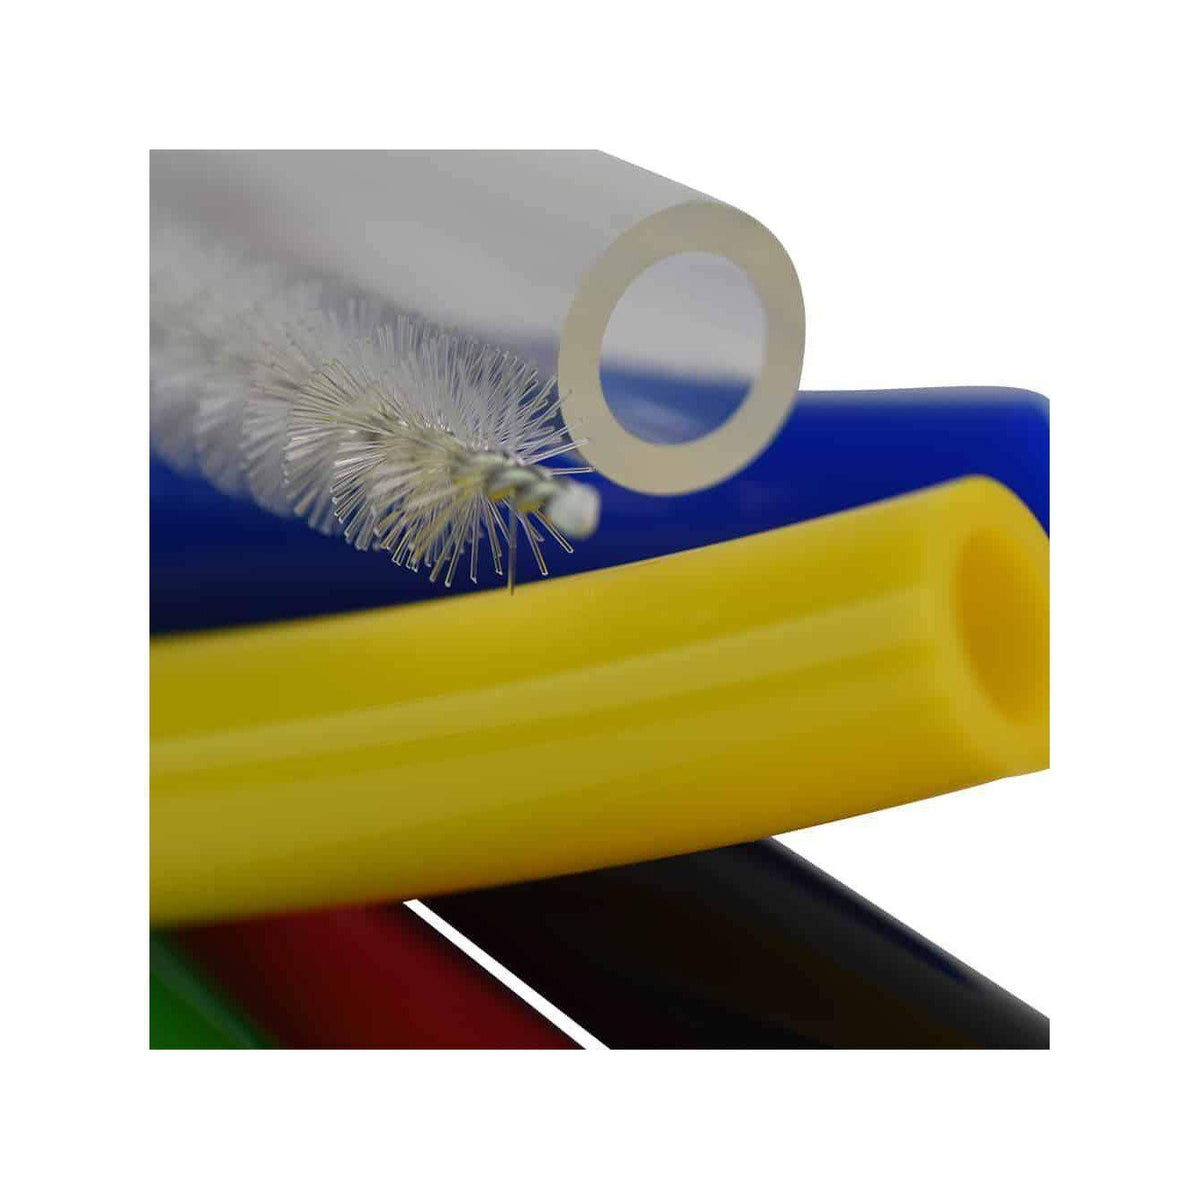 tubes brush cleaning kit-set of 2 – ChuBuddy, LLC